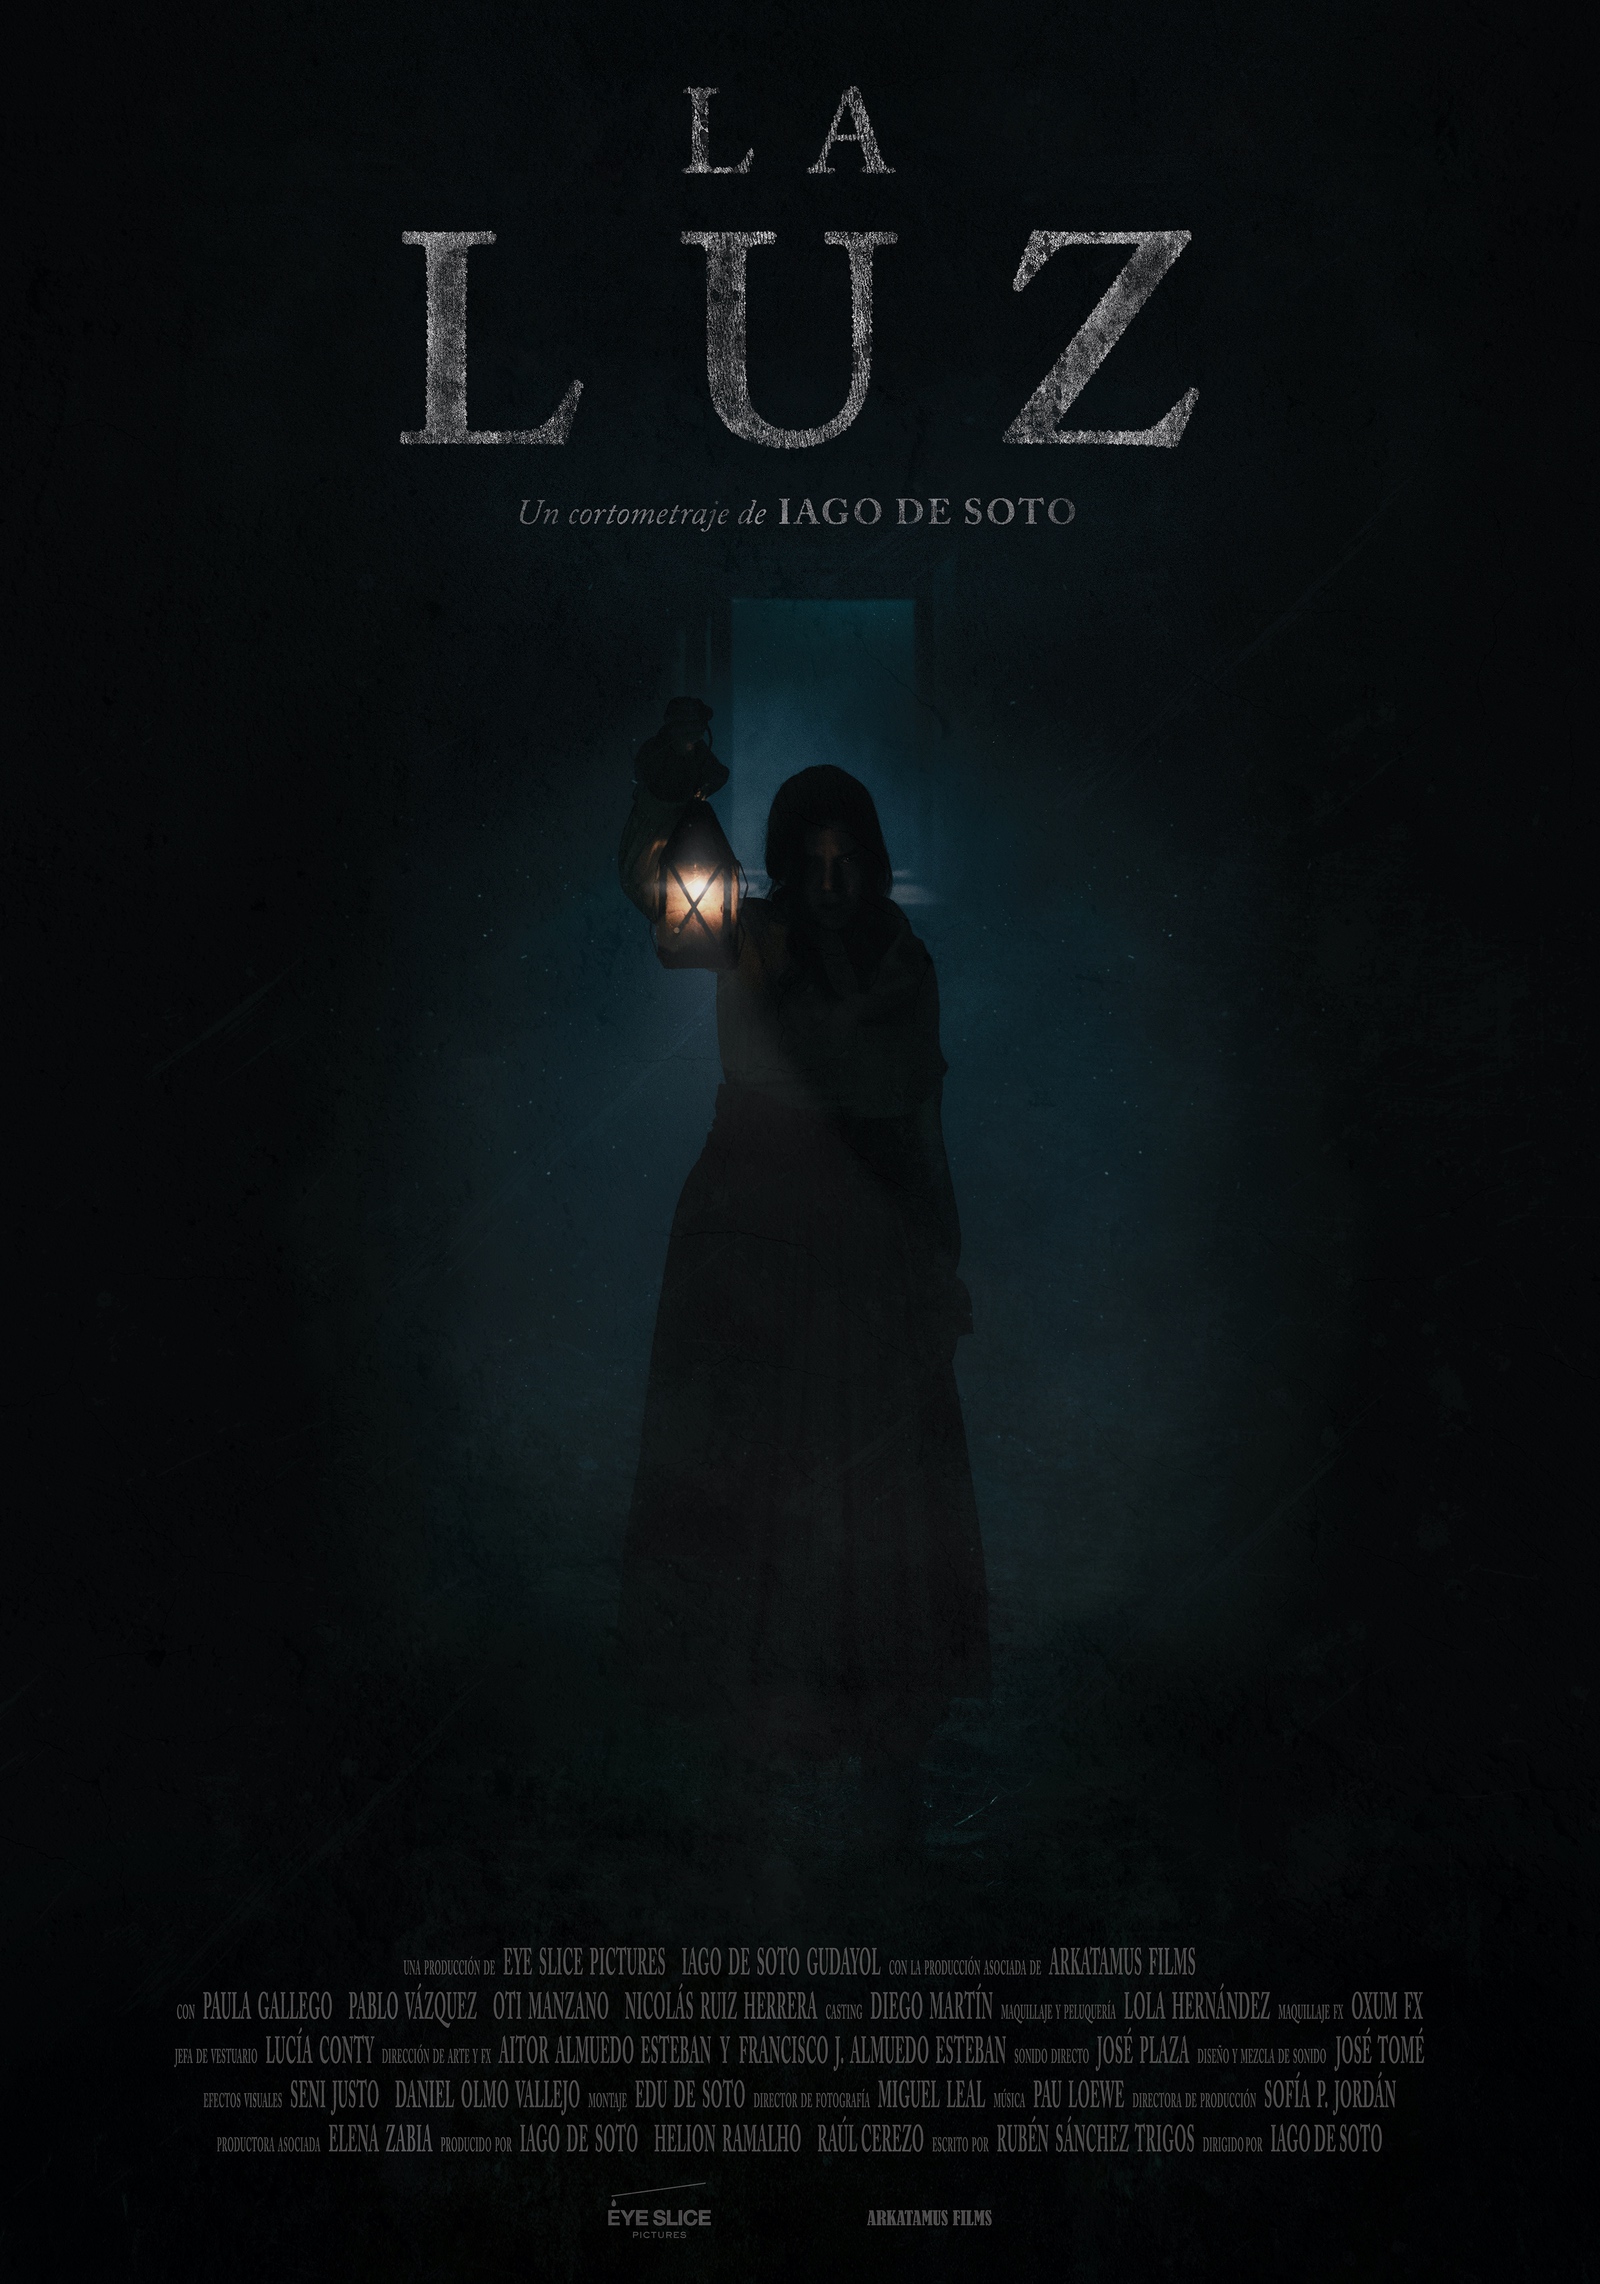 Cartel cortometraje La Luz, dirigido por Iago de Soto